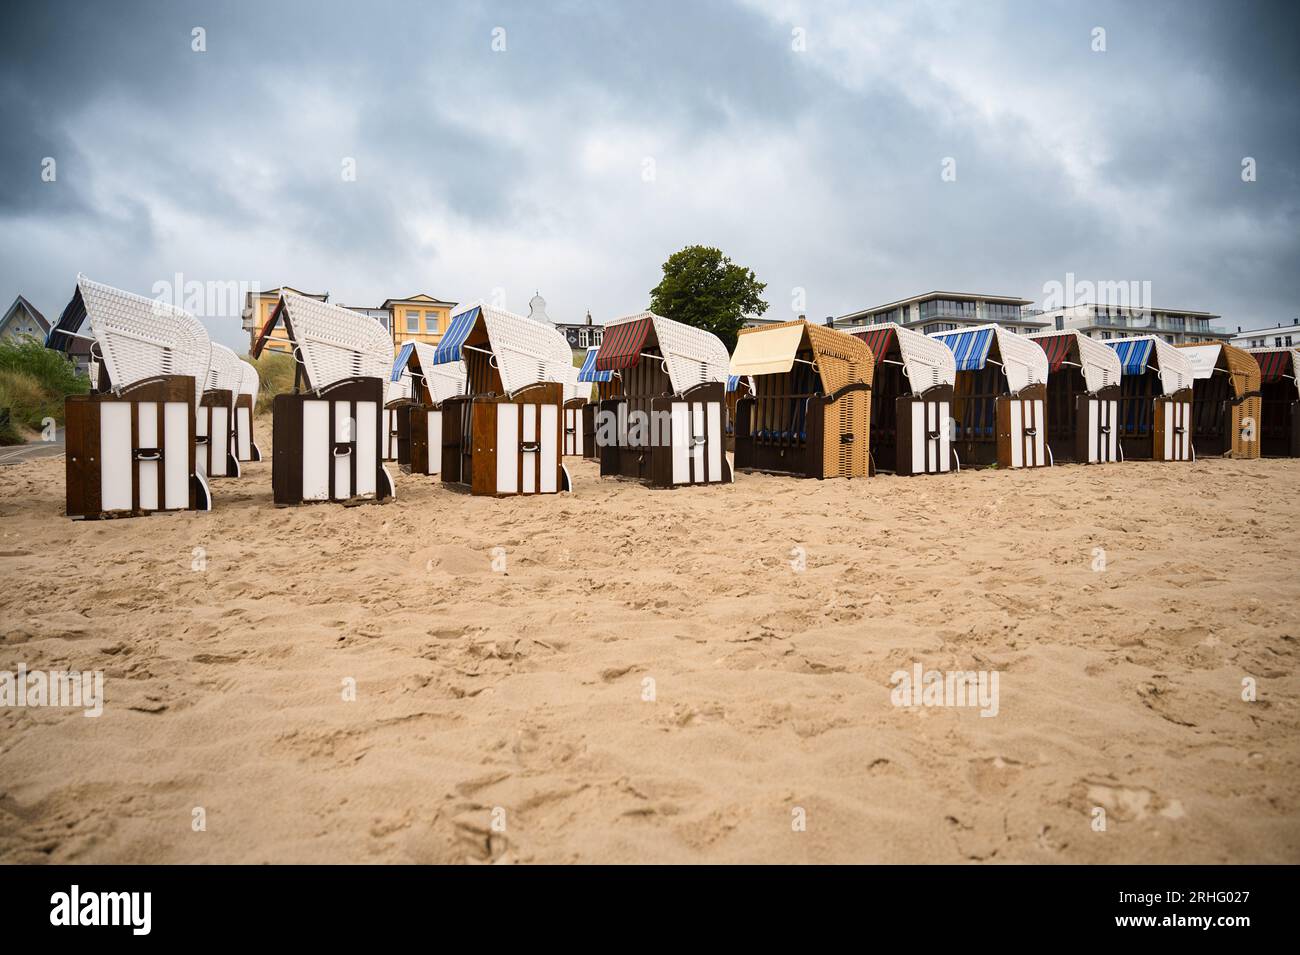 Chaises de plage en osier couvert à la plage de la mer baltique, côte à l'île d'Usedom en Allemagne, tempête et pluie sur l'eau saumâtre, hautes vagues, stor Banque D'Images